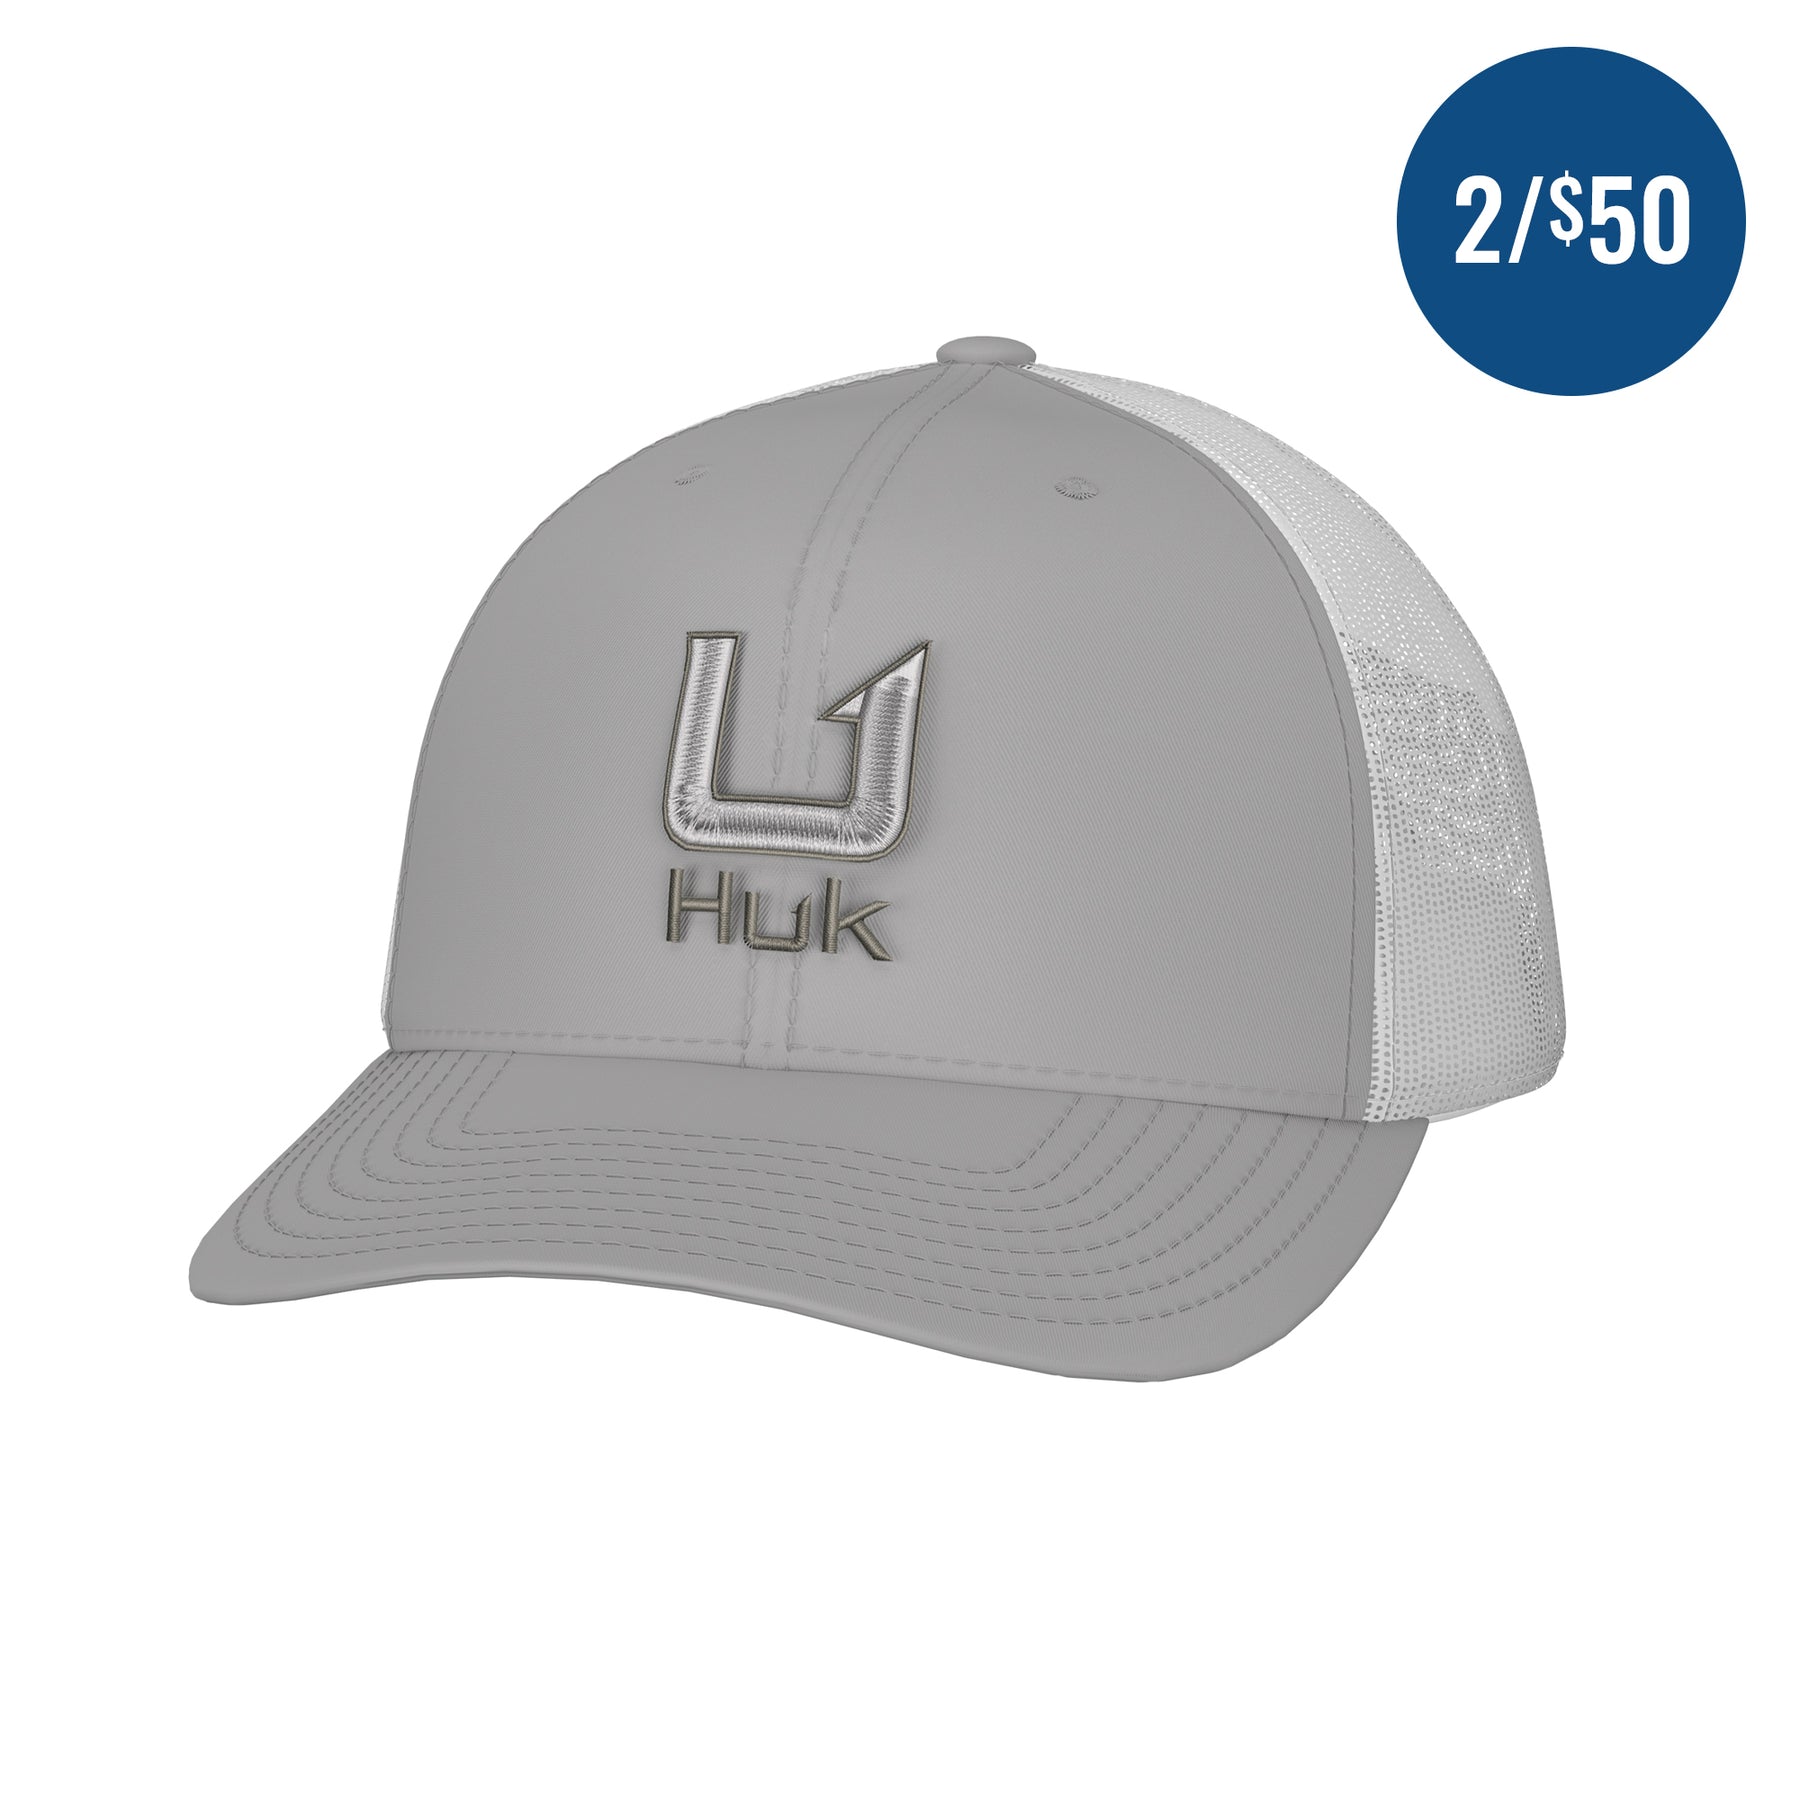 Huk Performance Fishing Hat Mesh Snapback Trucker Gray White Logo